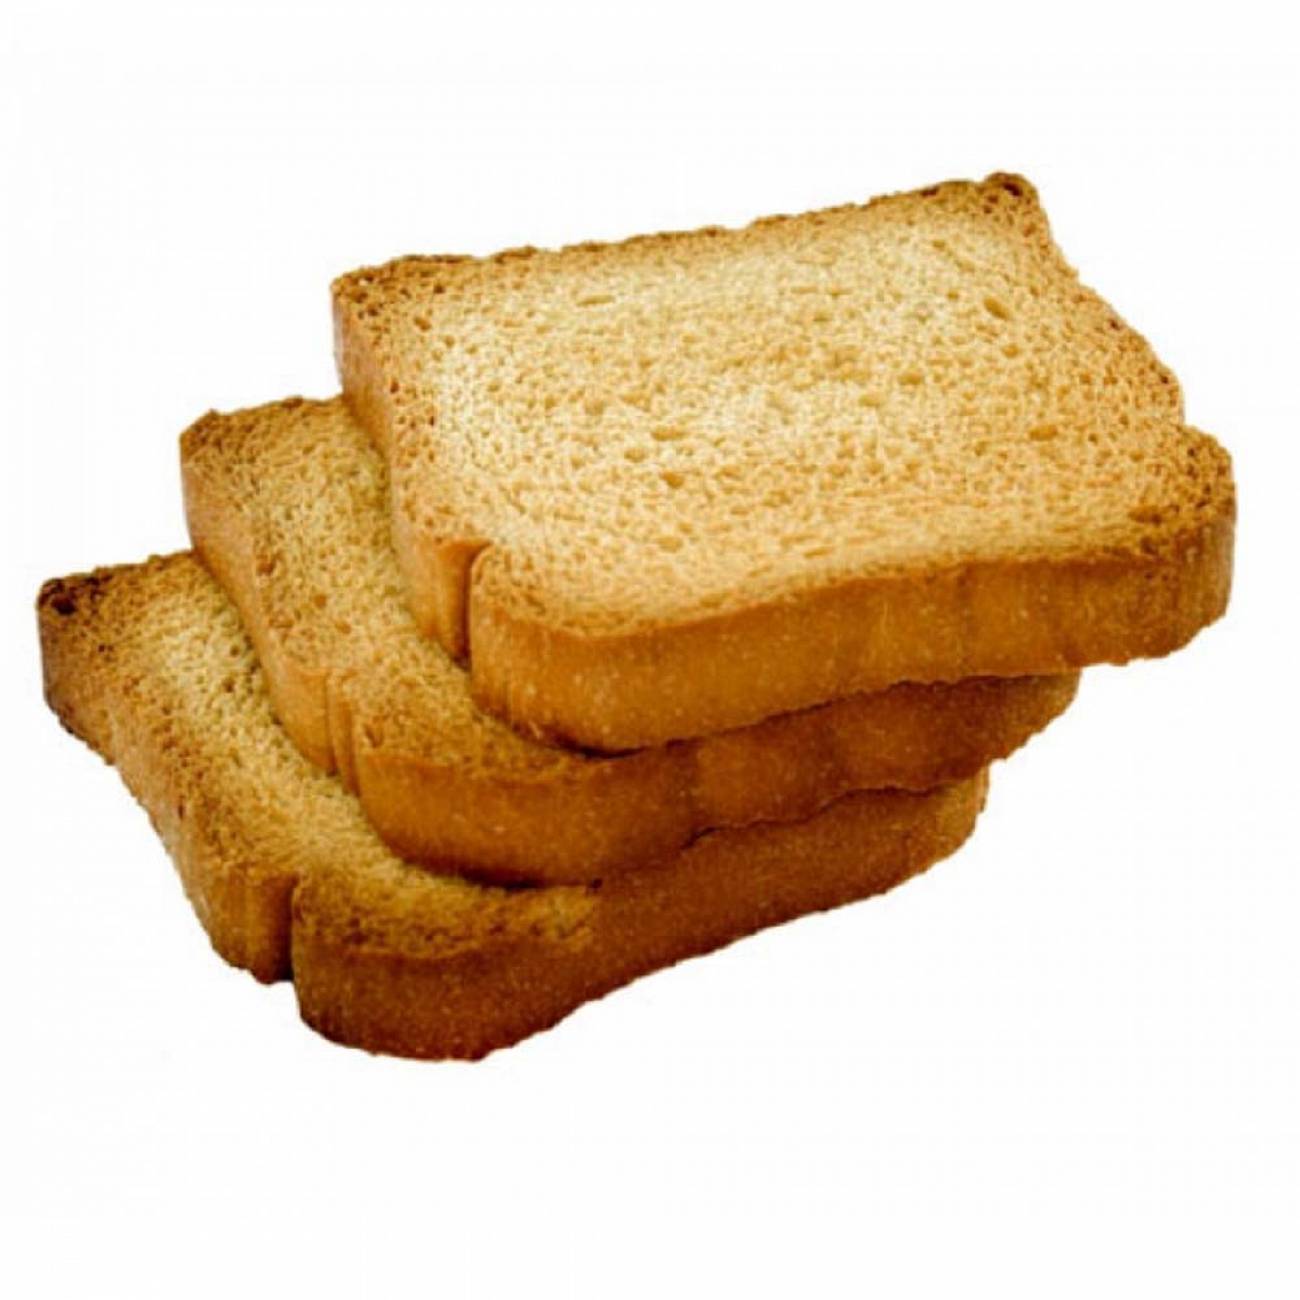 Кусок тостового хлеба. Тостовый хлеб. Хлеб для тостов. Поджаристый хлеб. Булка для тостов.